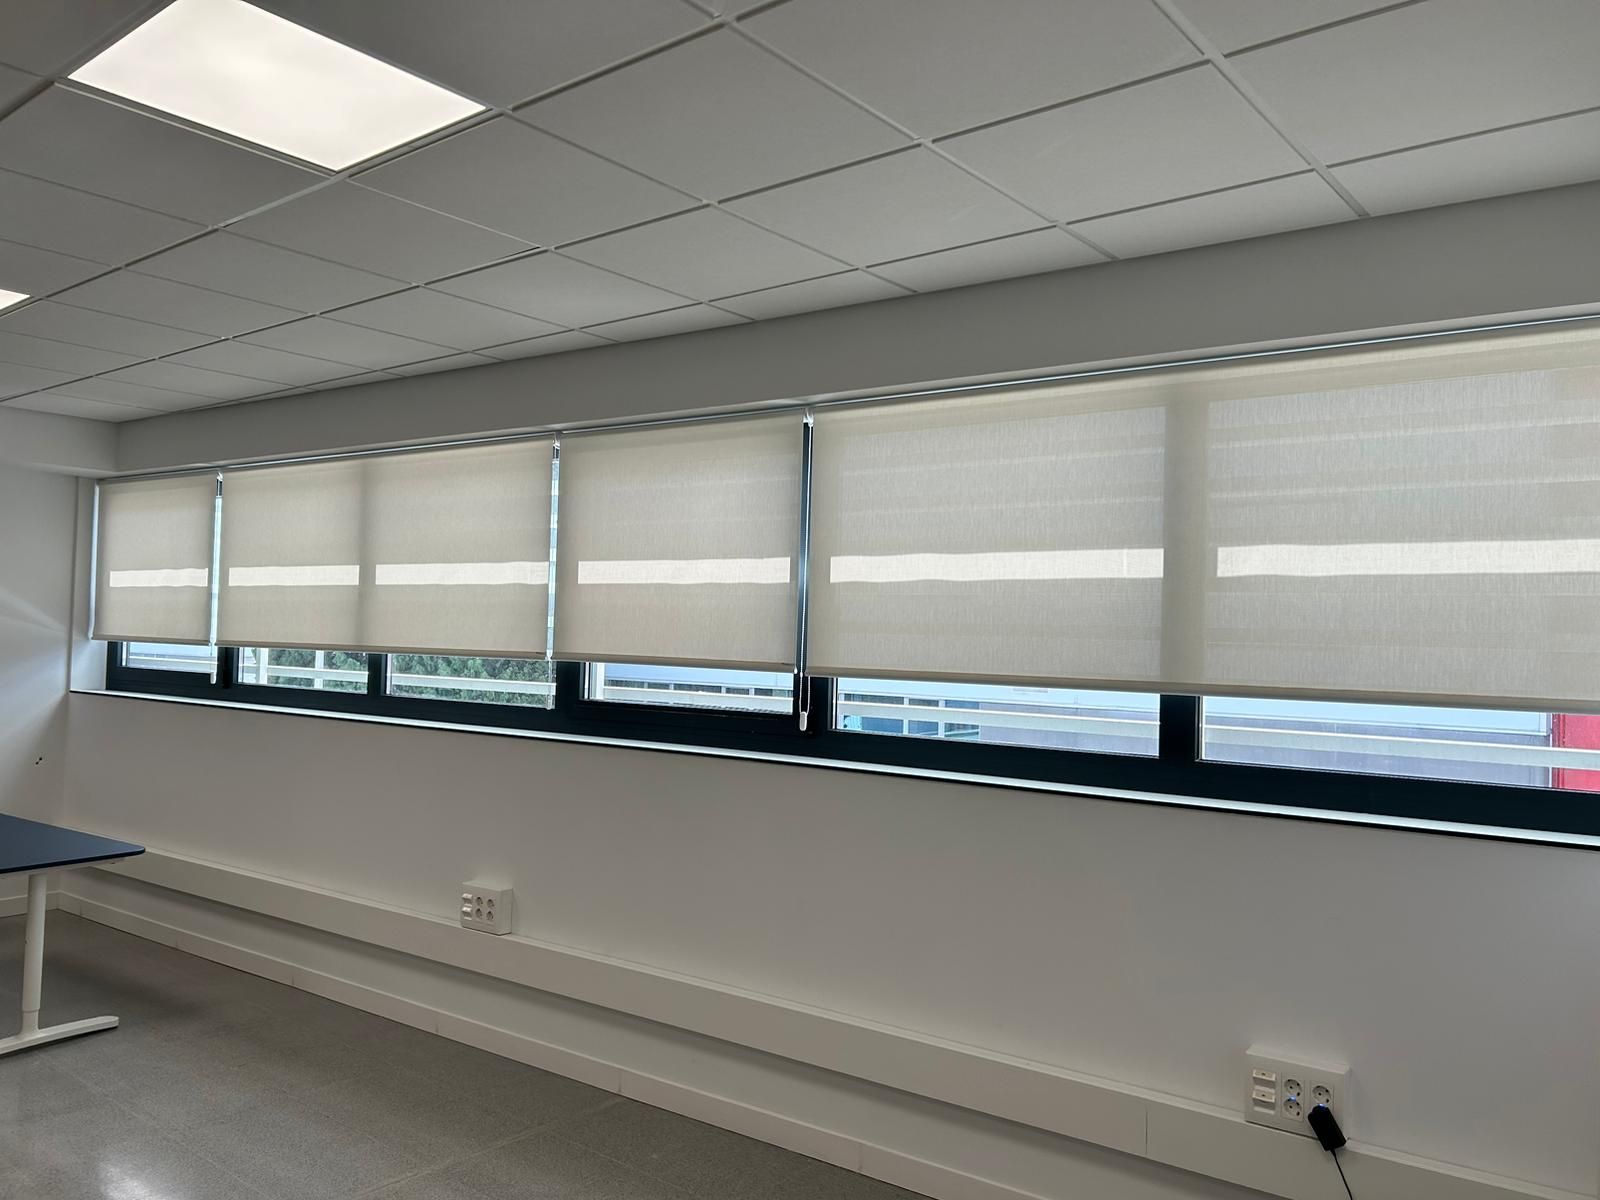 Instalación de cortinas con tejido técnico screen, abertura del 1% Referencia 420P y color White, en oficinas de Sant Feliu de Llobregat